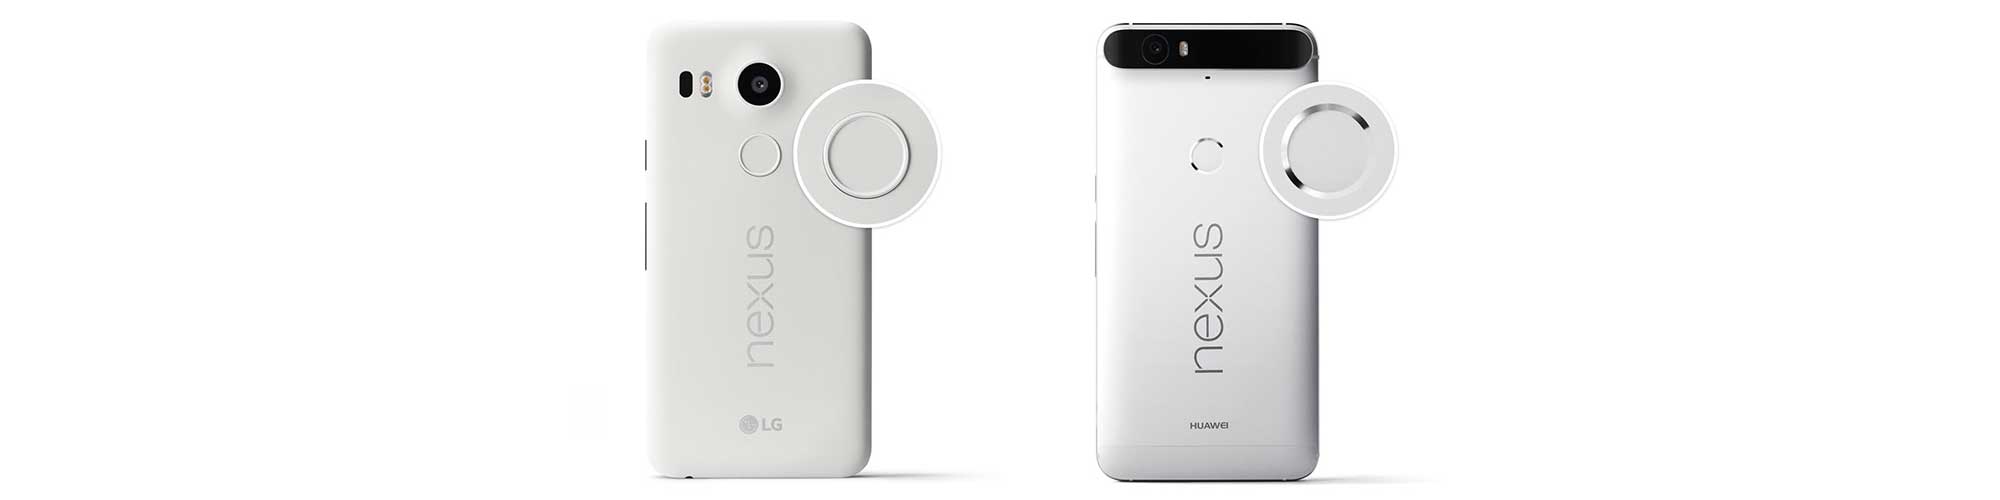  Nexus 6P  5X    OTA 